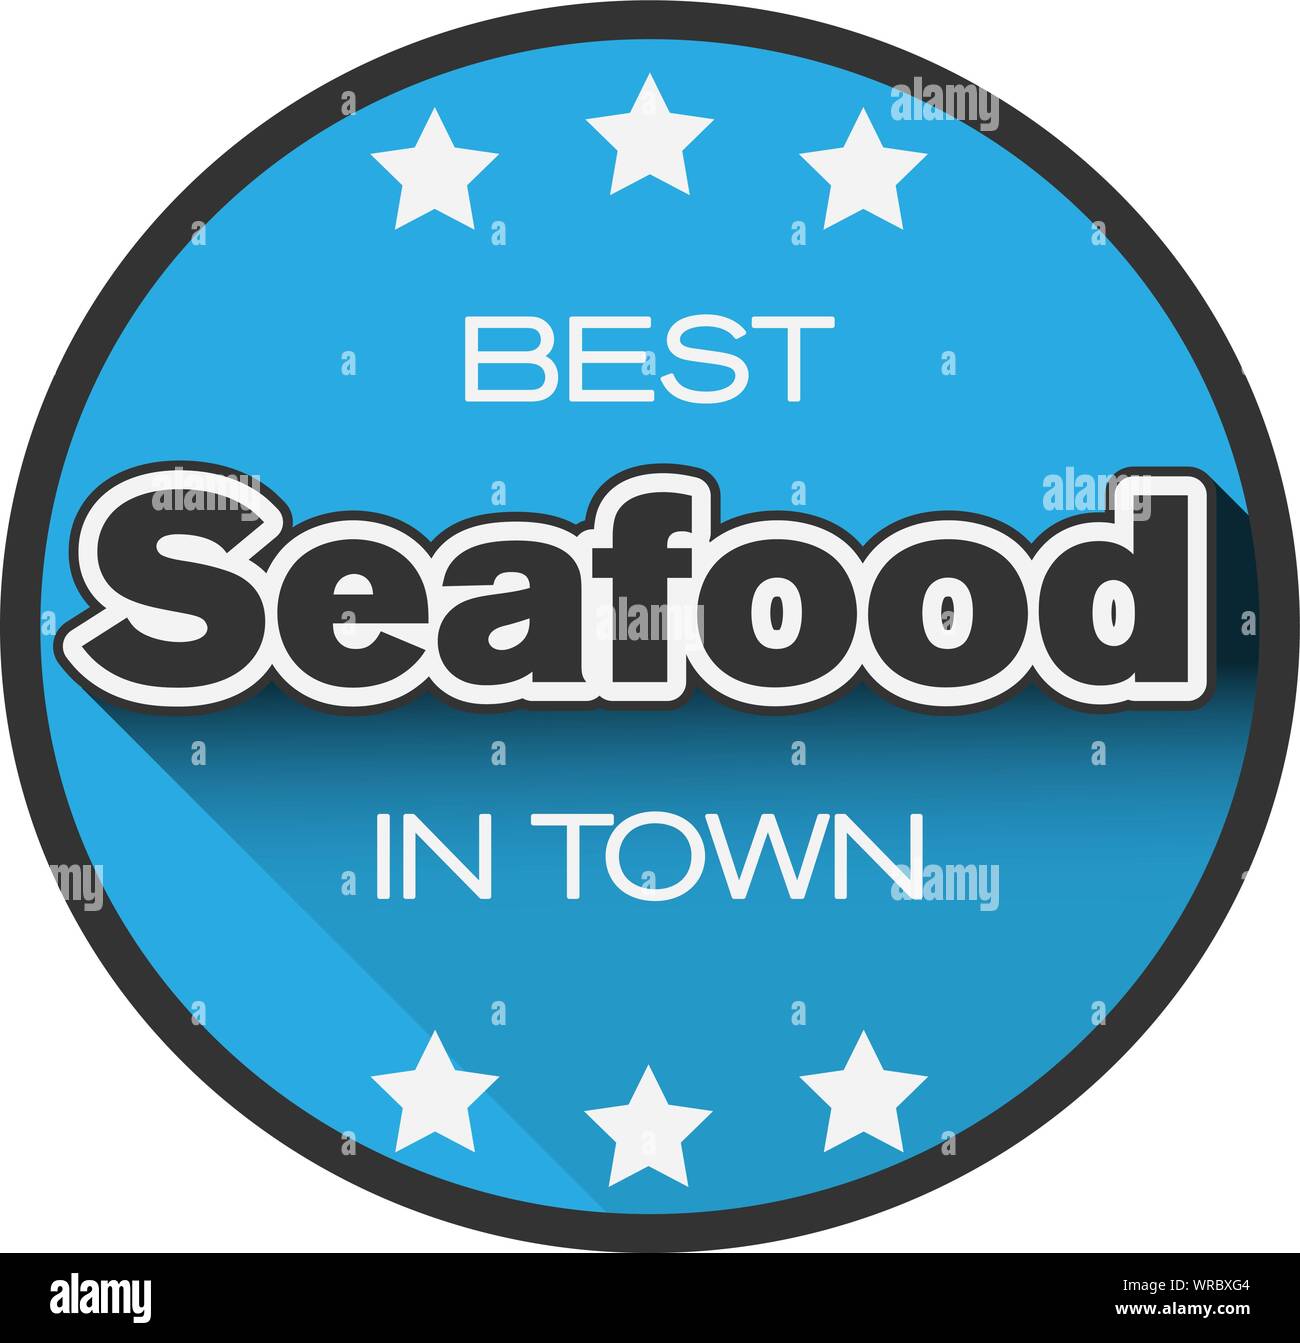 Die besten Meeresfrüchte in der Stadt Logo oder den Aufkleber, Vektor, Abbildung Stock Vektor